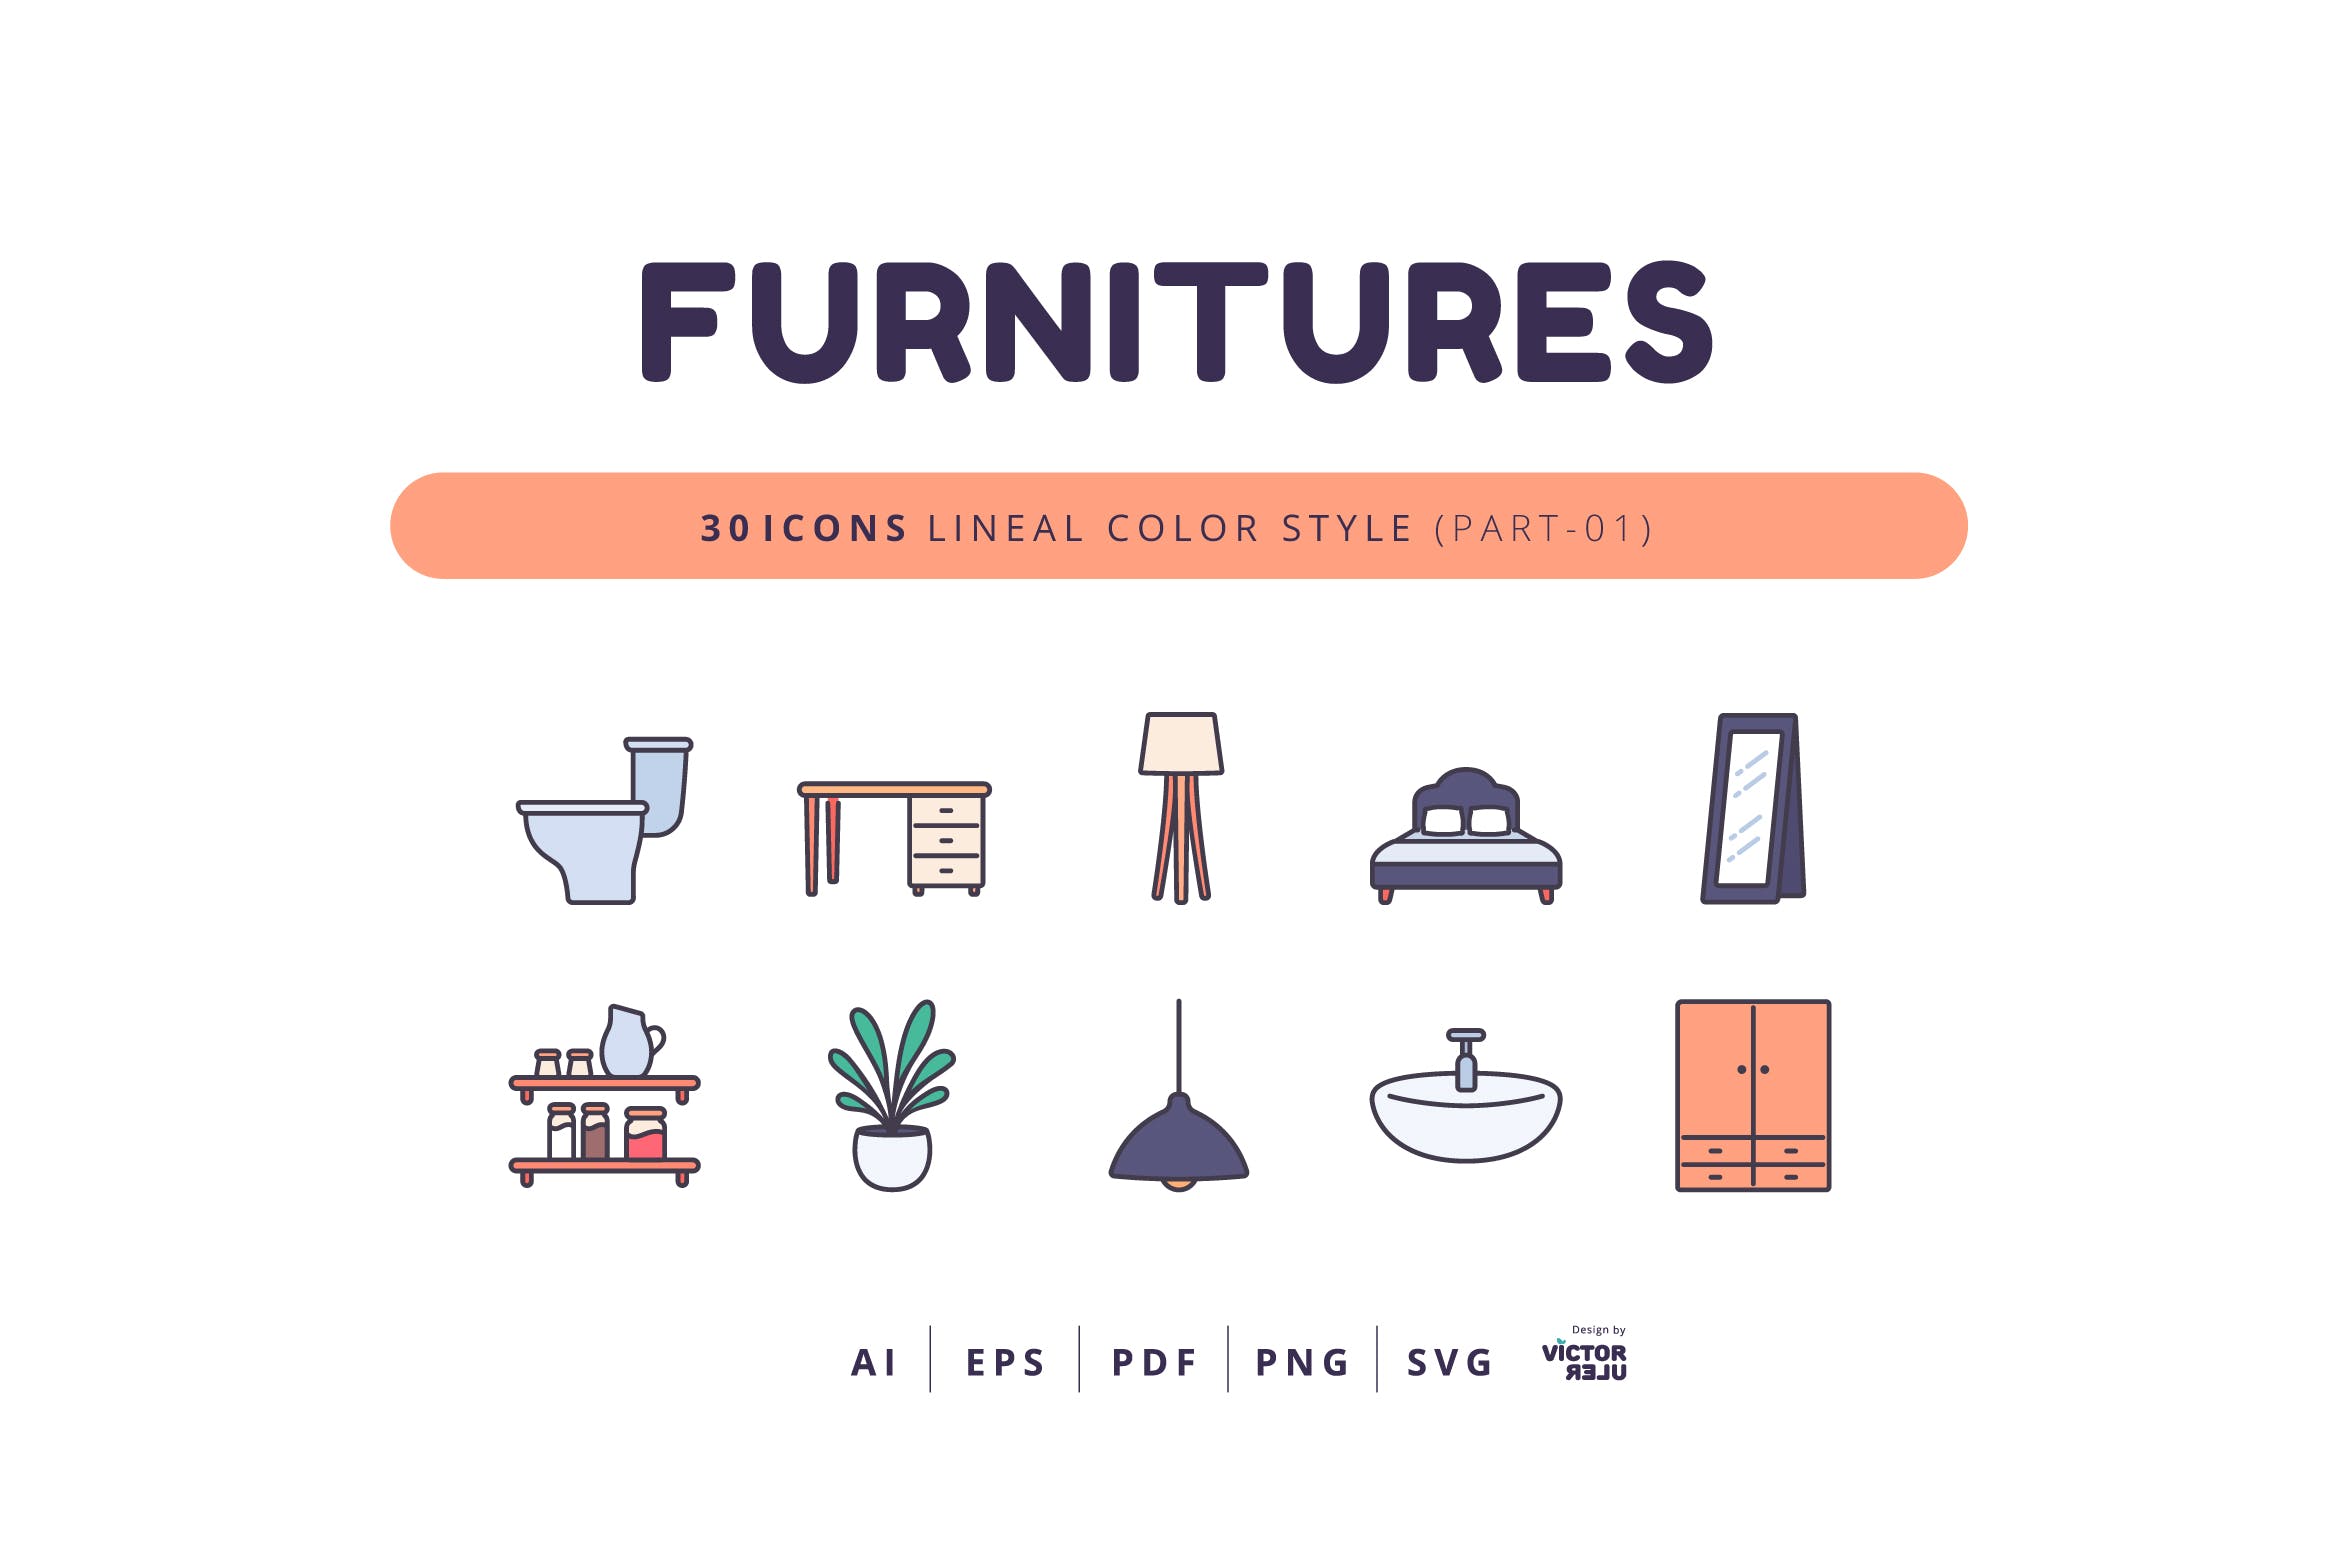 可编辑矢量30枚线条彩色风格家具图标素材免费下载